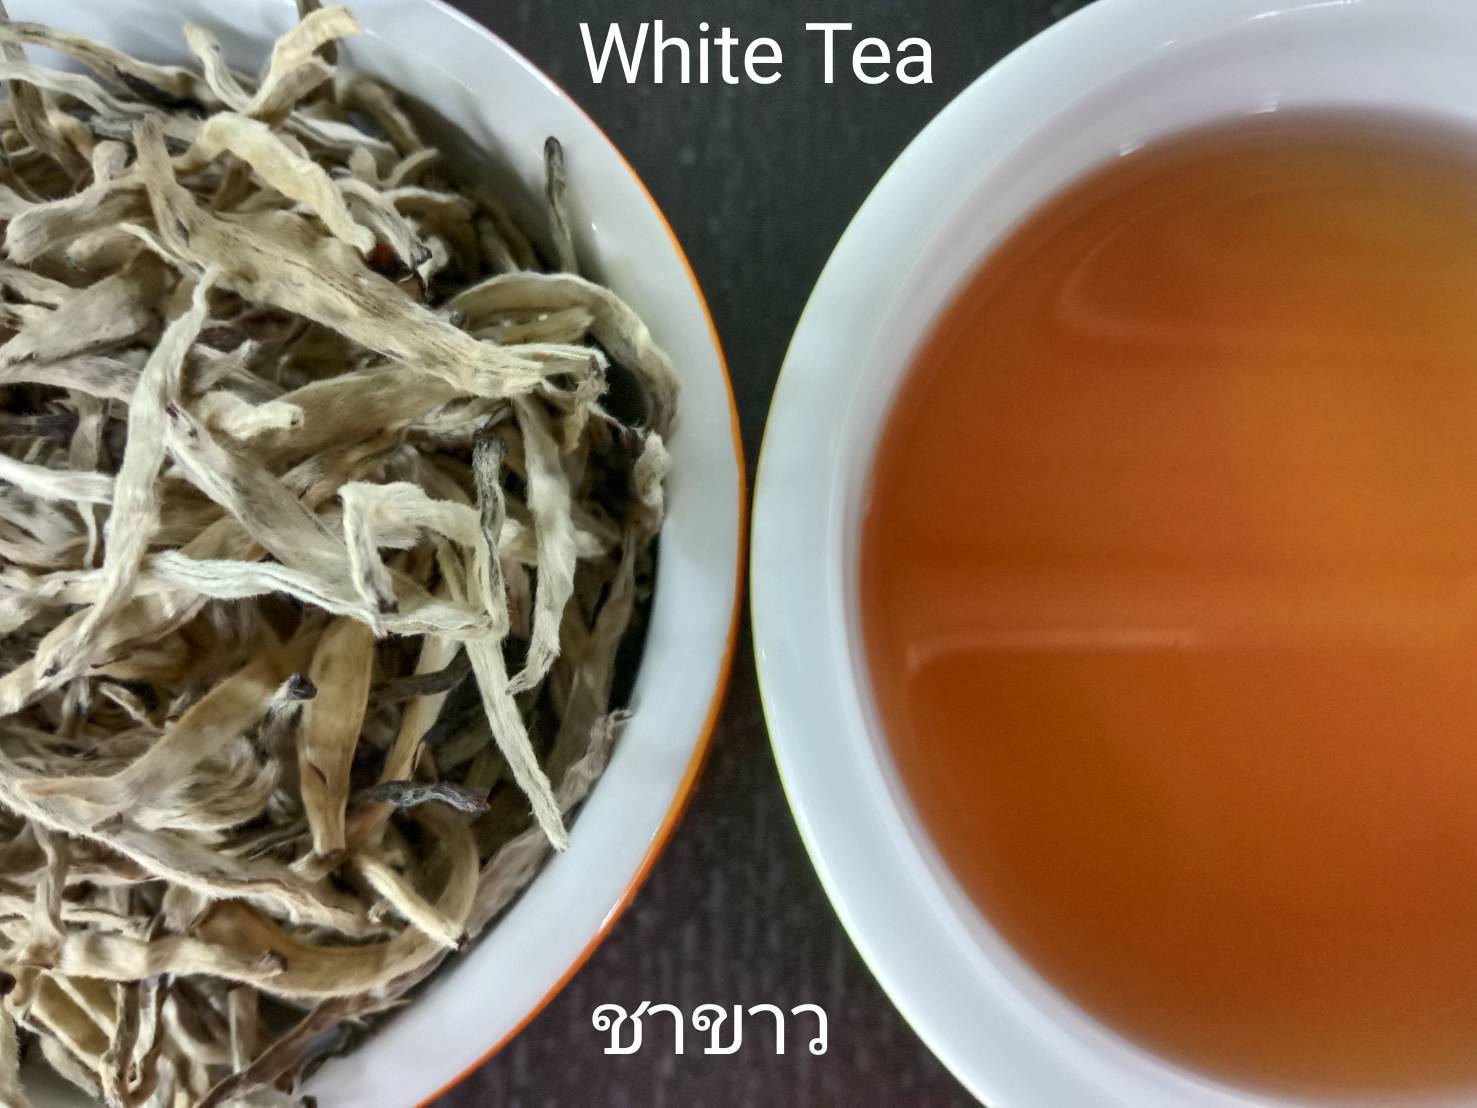 ชาขาวอัสสัม ออร์แกนิค (Organic assam white tea)